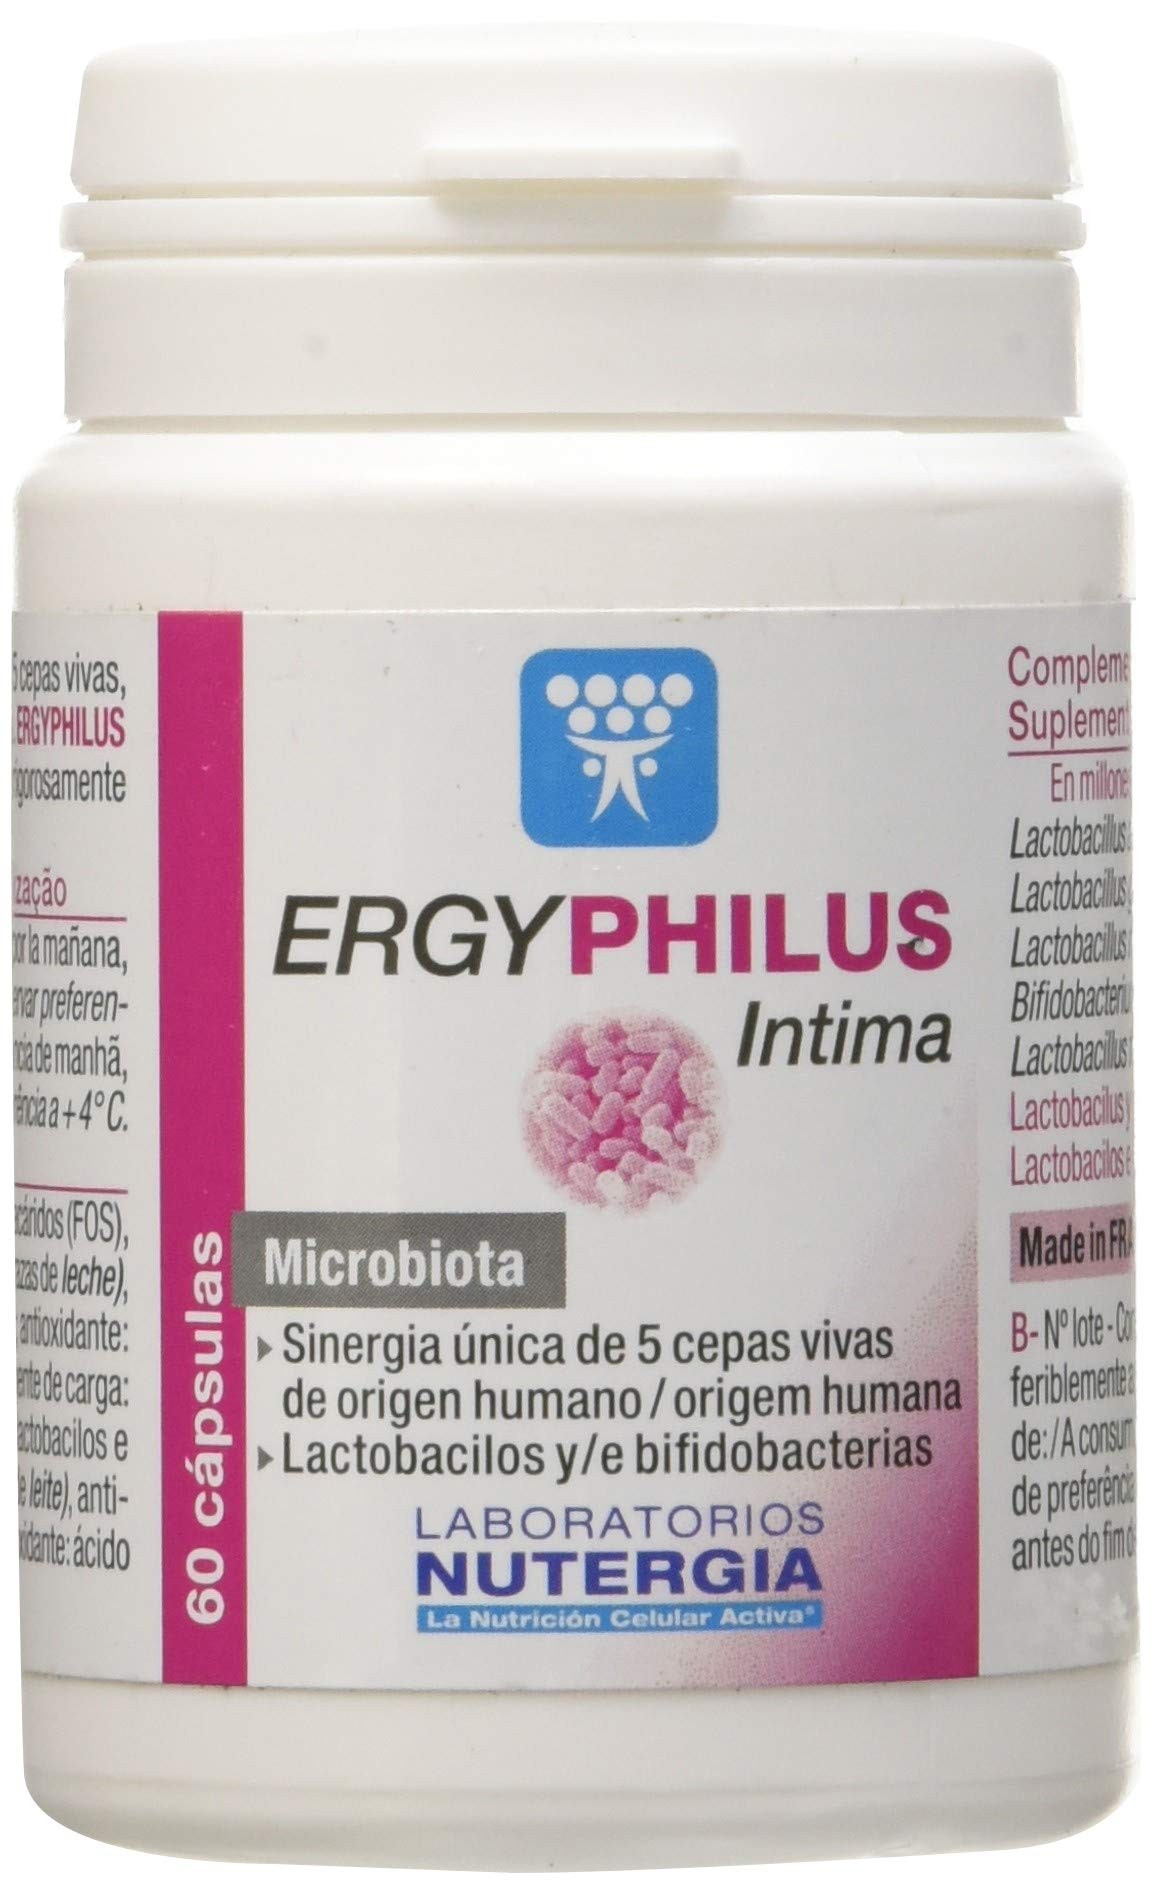 ERGYPHILUS INTIMA 60 CAPSULAS LABORATORIOS NUTERGIA - Vitalis Natur Pharma